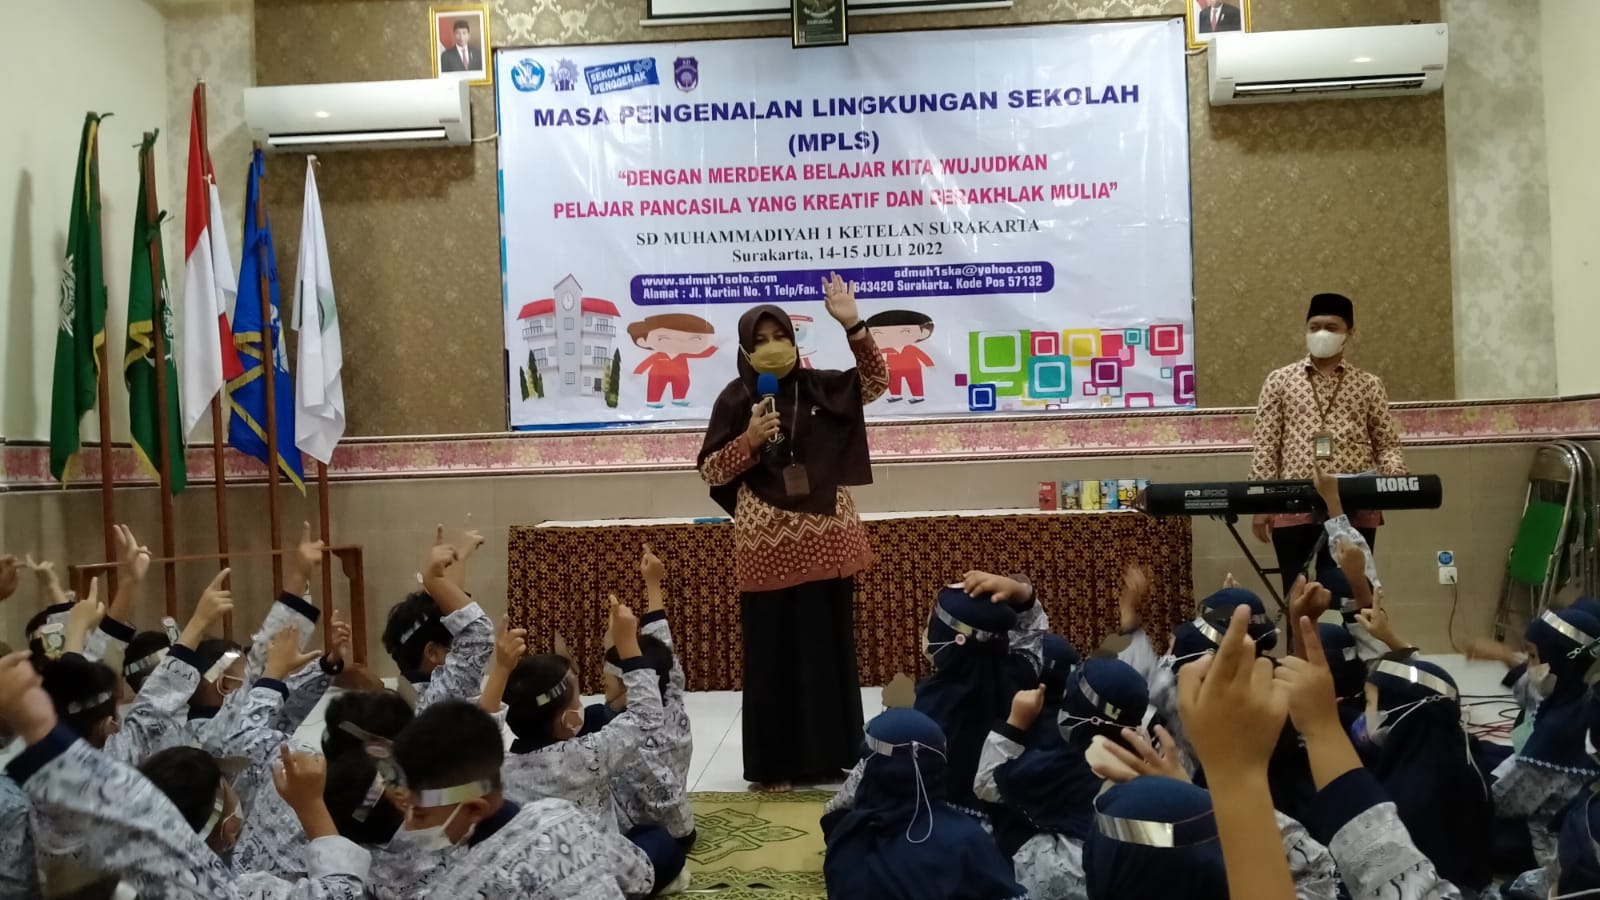 SD Muhammadiyah 1 Ketelan Solo Usung Konsep Pelajar Pancasila dalam Pembelajaran